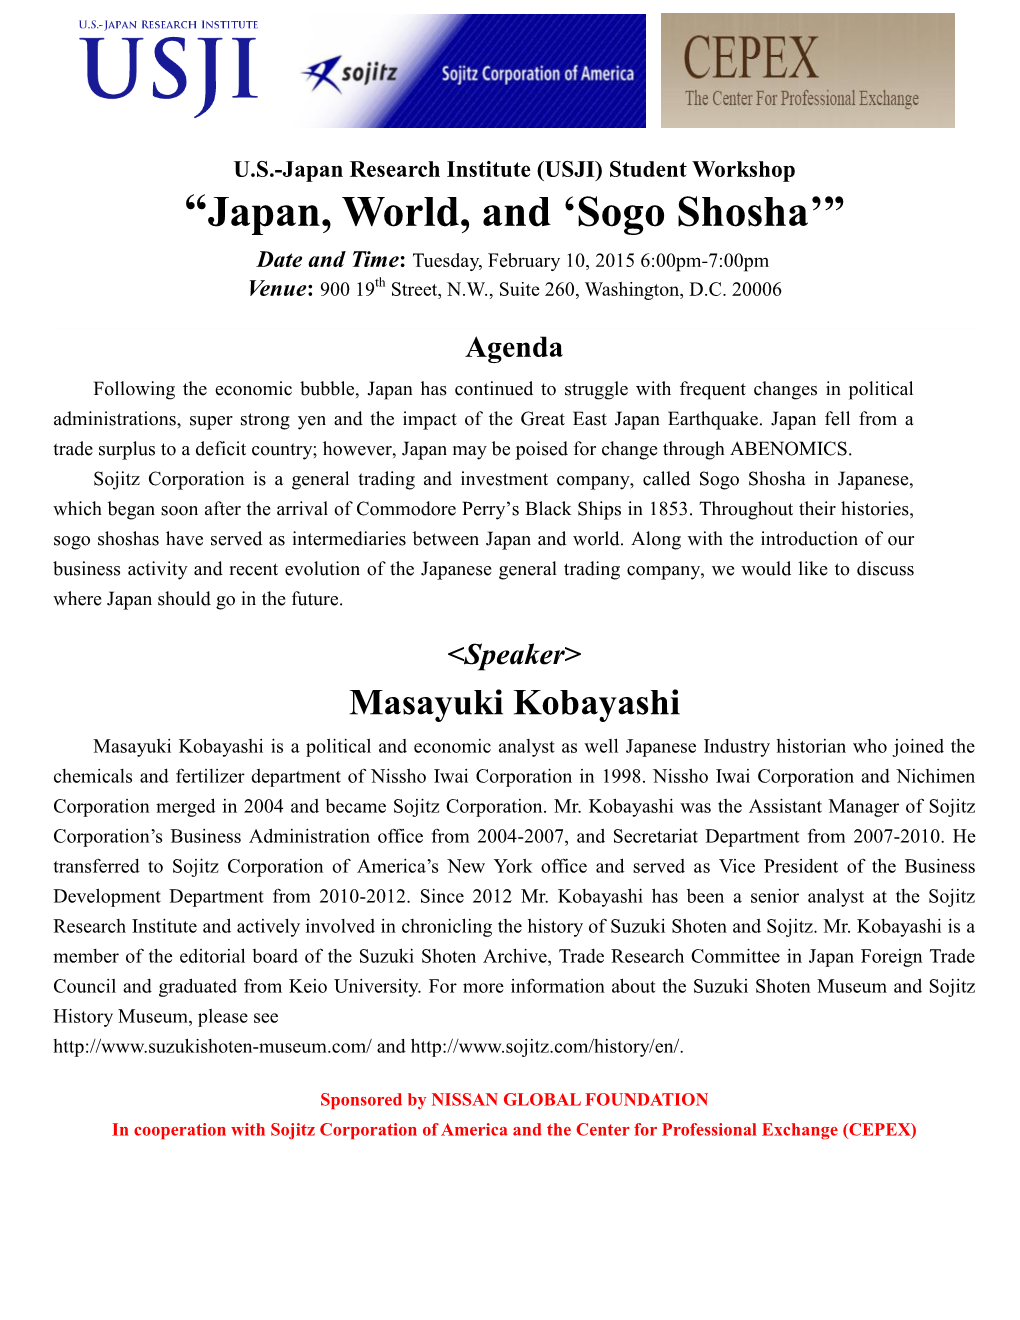 “Japan, World, and 'Sogo Shosha'”